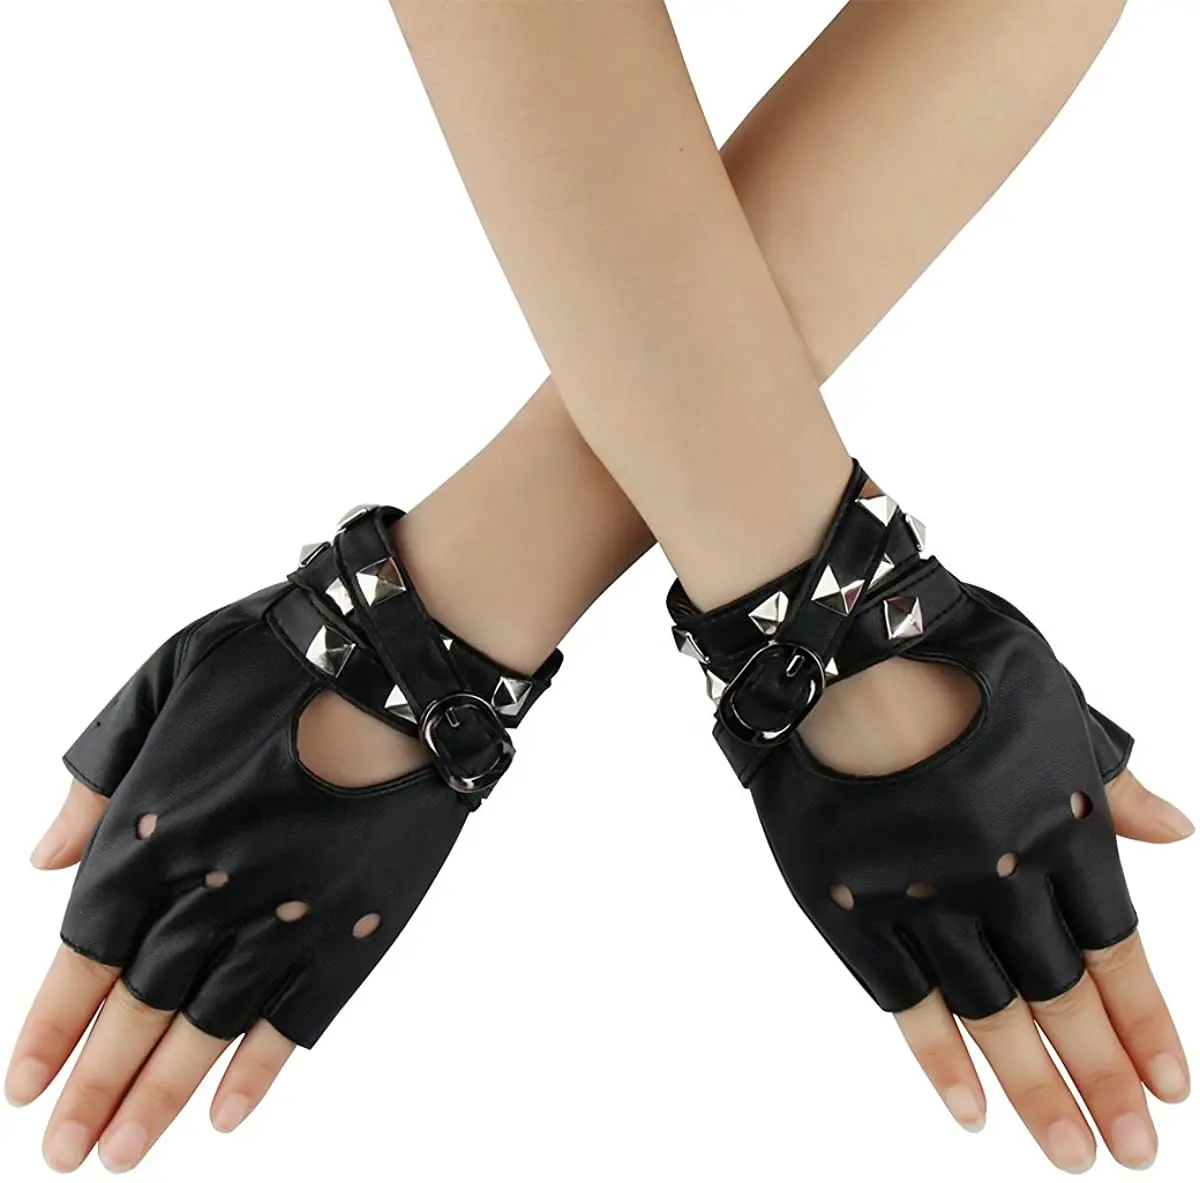 Guantes góticos de medio dedo para Cosplay, remaches de disfraz con tachuelas para motorista, accesorio de cuero sin dedos para conducir